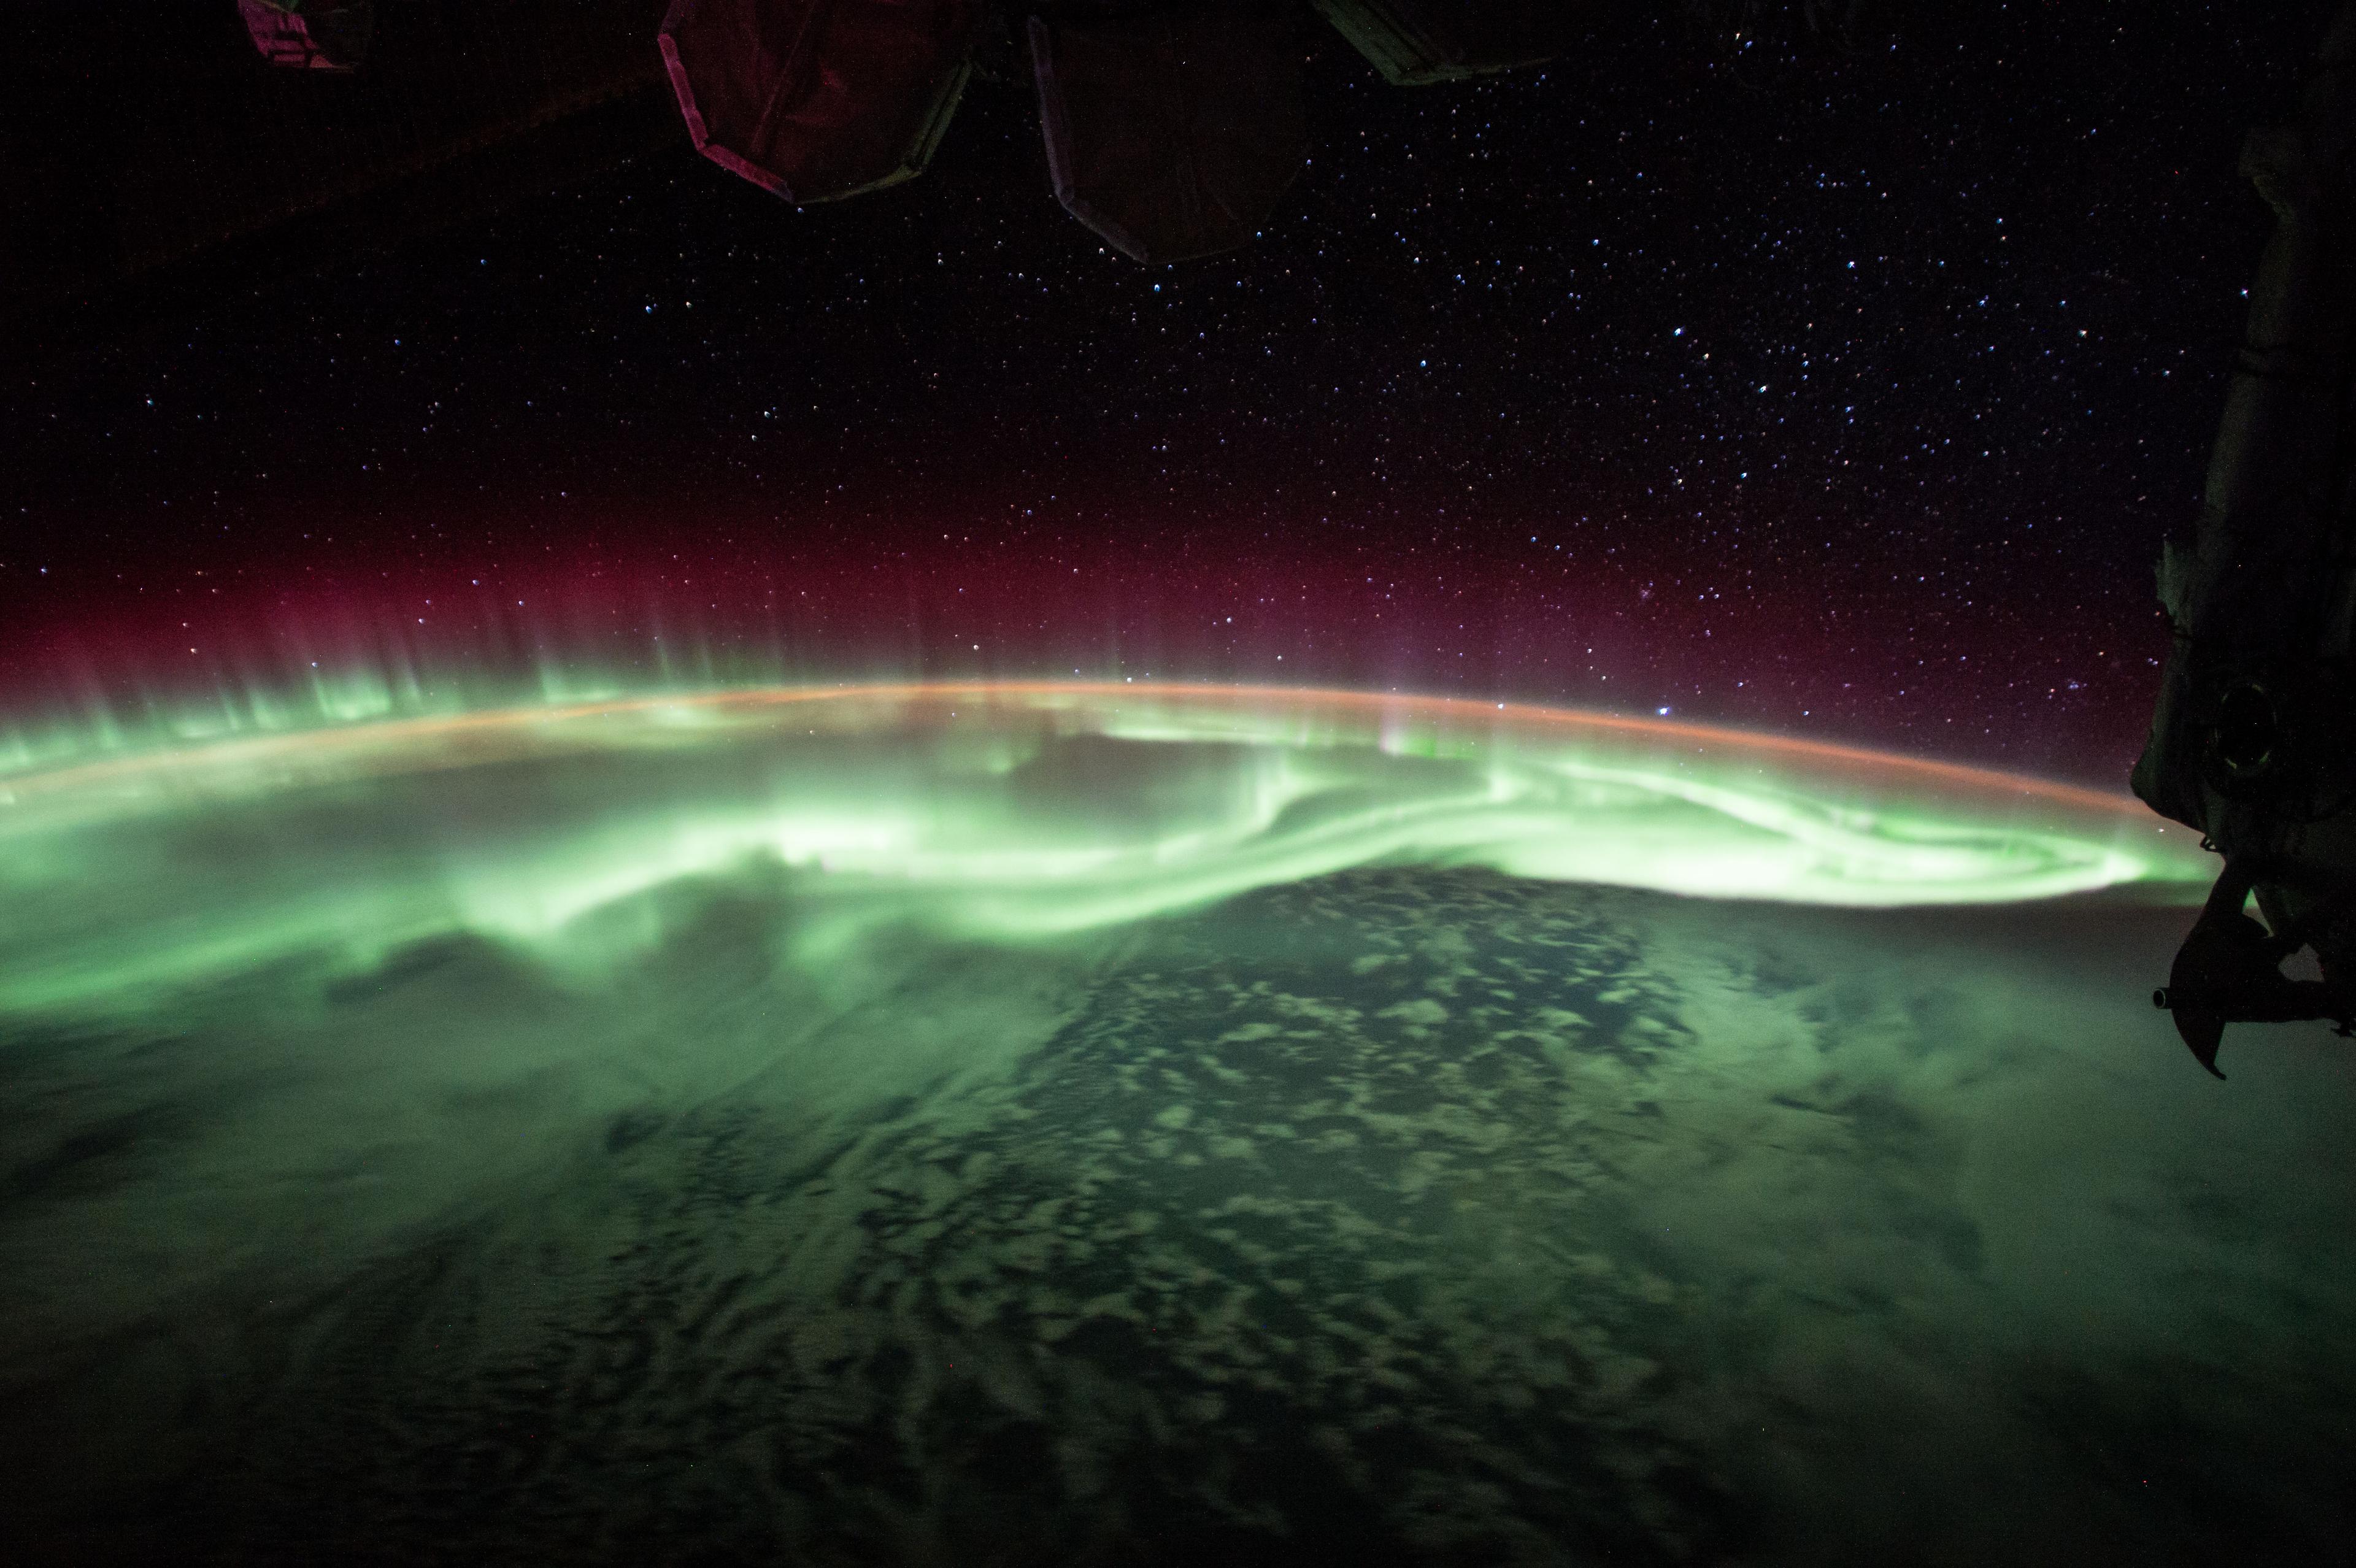 الشفق القطبي فوق الأرض كما التقط من محطة الفضاء الدولية حيث تظهر طبقاته الخضراء عند الارتفاعات المنخفضة وتلك المائلة إلى الأحمر في الارتفاعات الأعلى. الصورة التقطت أثناء مرور المحطّة فوق نقطة تقع إلى الجنوب الشرقي من أستراليا، مع ظهور نجوم أعلى يمين الأفق تنتمي إلى كوكبة الكلب الأكبر. تظهر كذلك الشعرى اليمانية كألمعِ نجمٍ بالقرب من طرف الأرض.